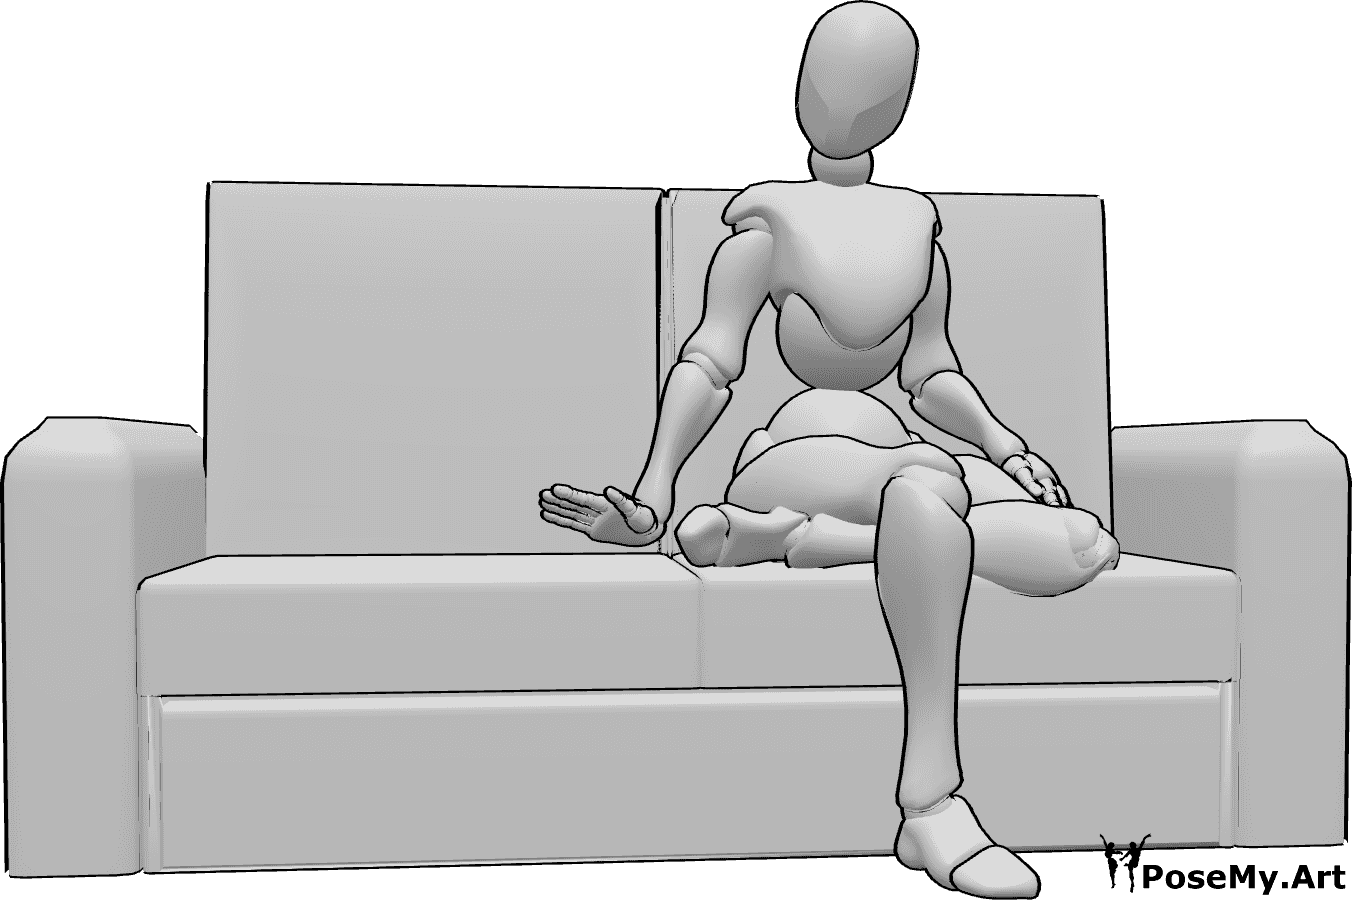 Referência de poses- Pose sentada convidativa feminina - A mulher está sentada no sofá com as pernas cruzadas e convida a sentar-se